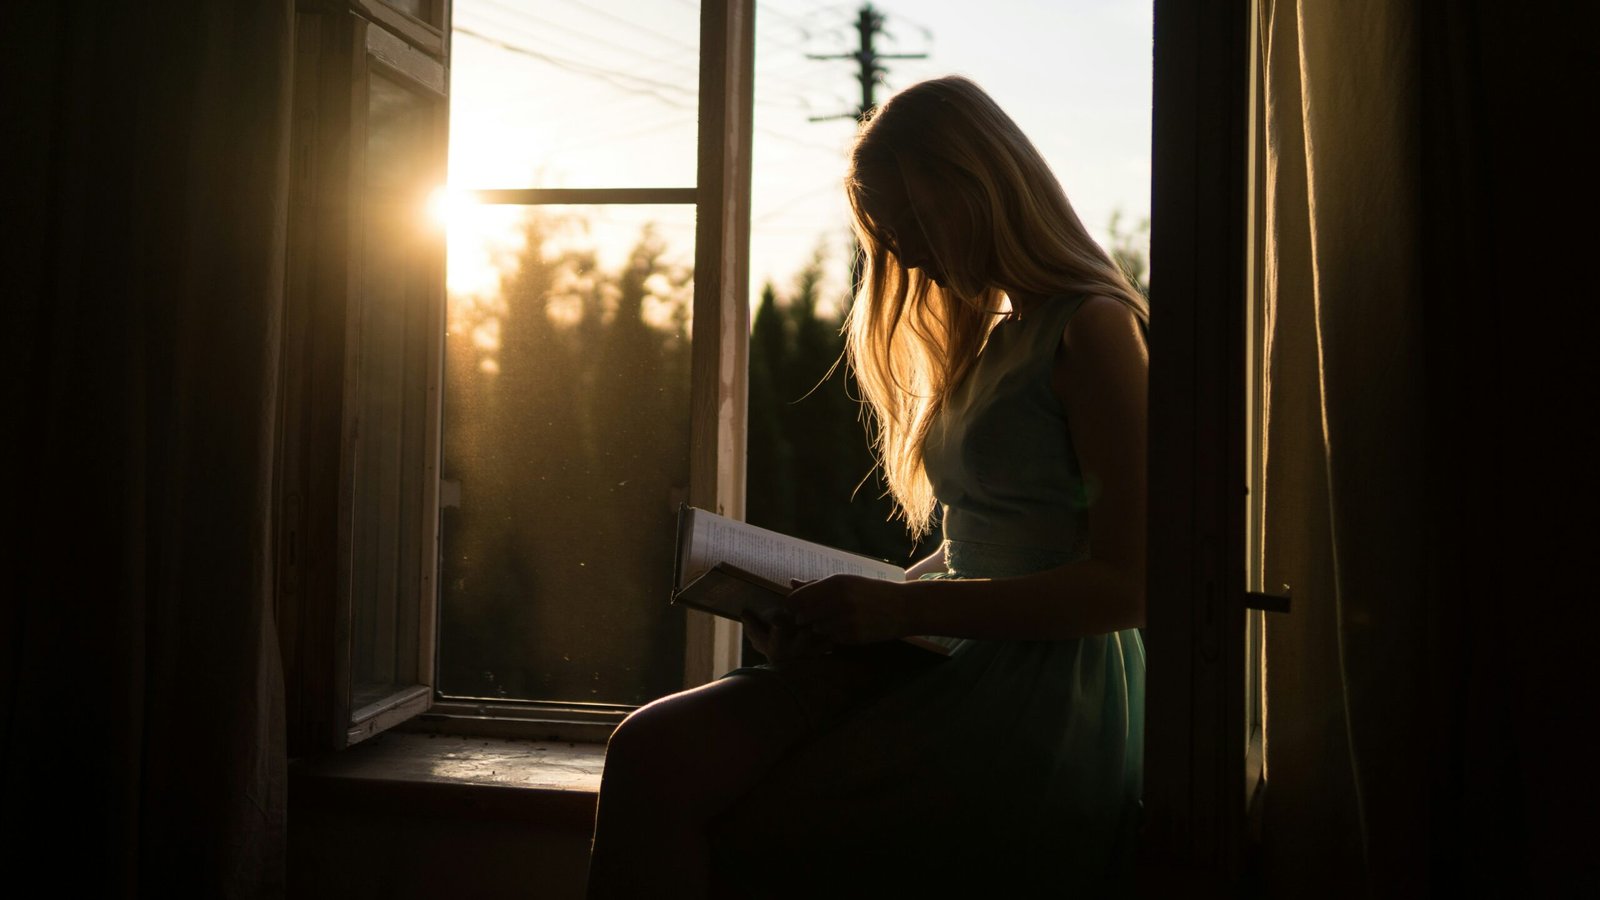 Contre-jour d'une femme lisant près d'une fenêtre au coucher du soleil, avec une lumière douce qui dessine sa silhouette.